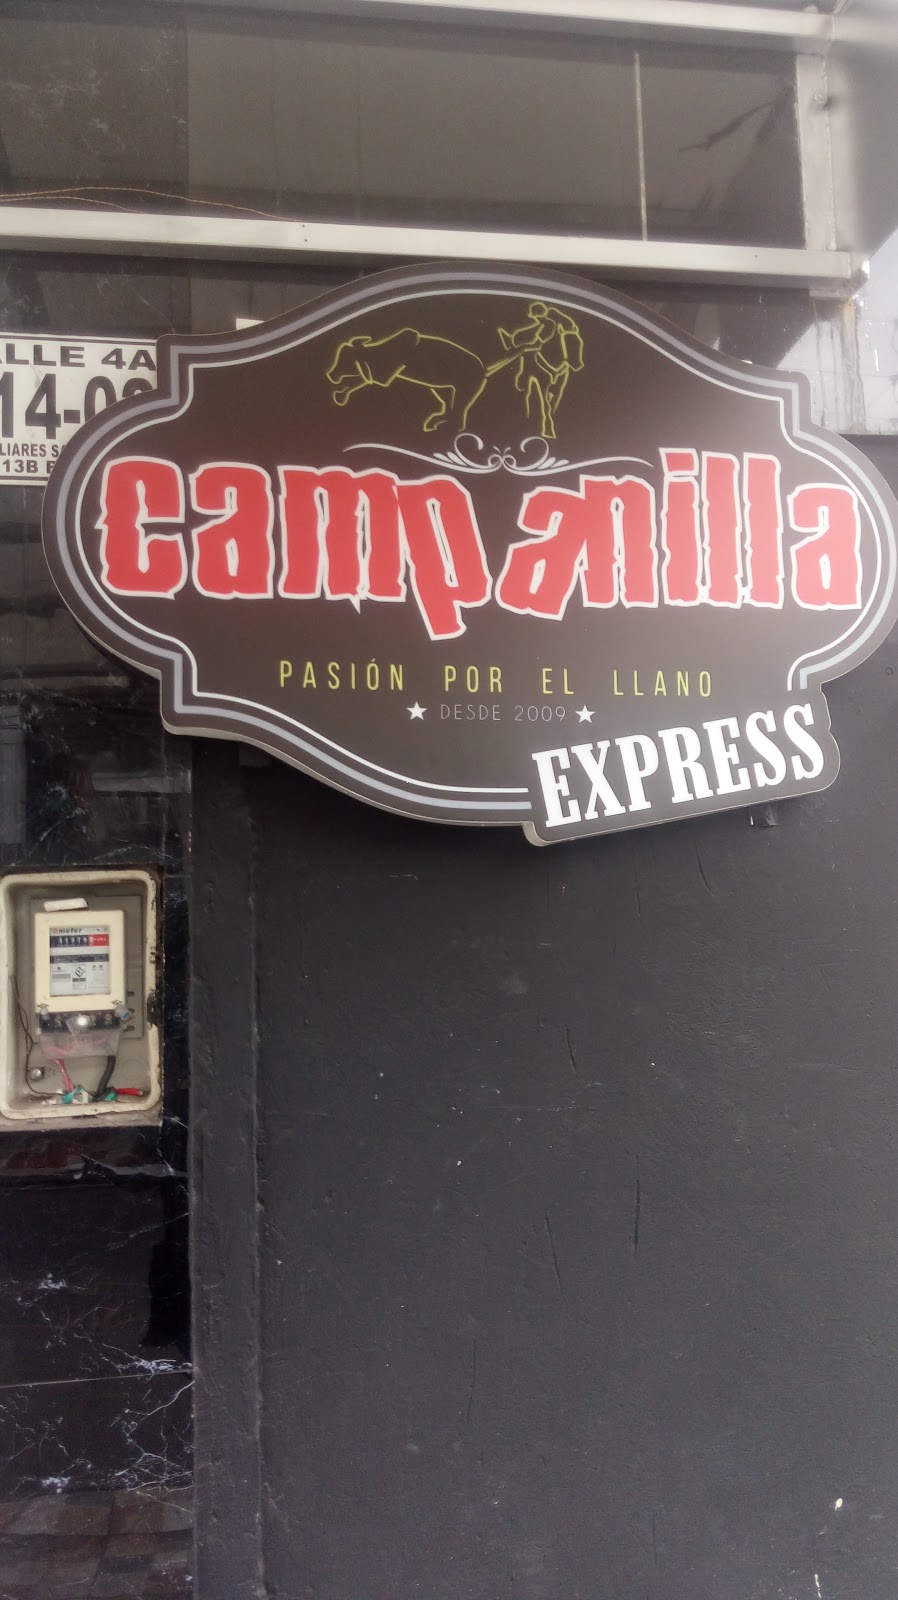 Campanilla Express